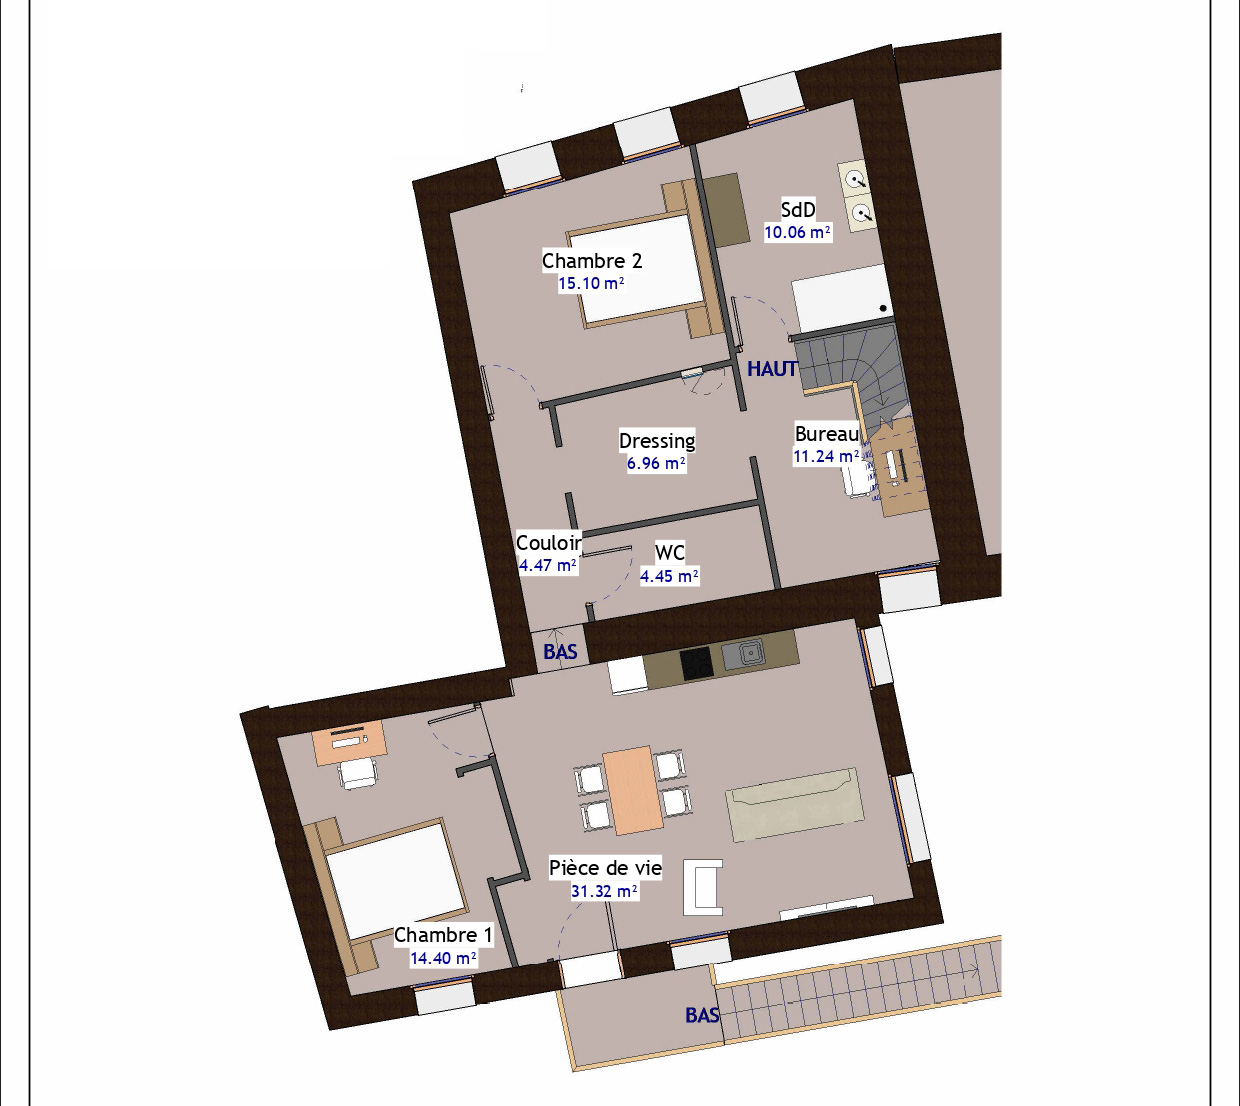 plan Lot 03 - Appartement T4 98m² + combles aménageables 50m²_page-0001